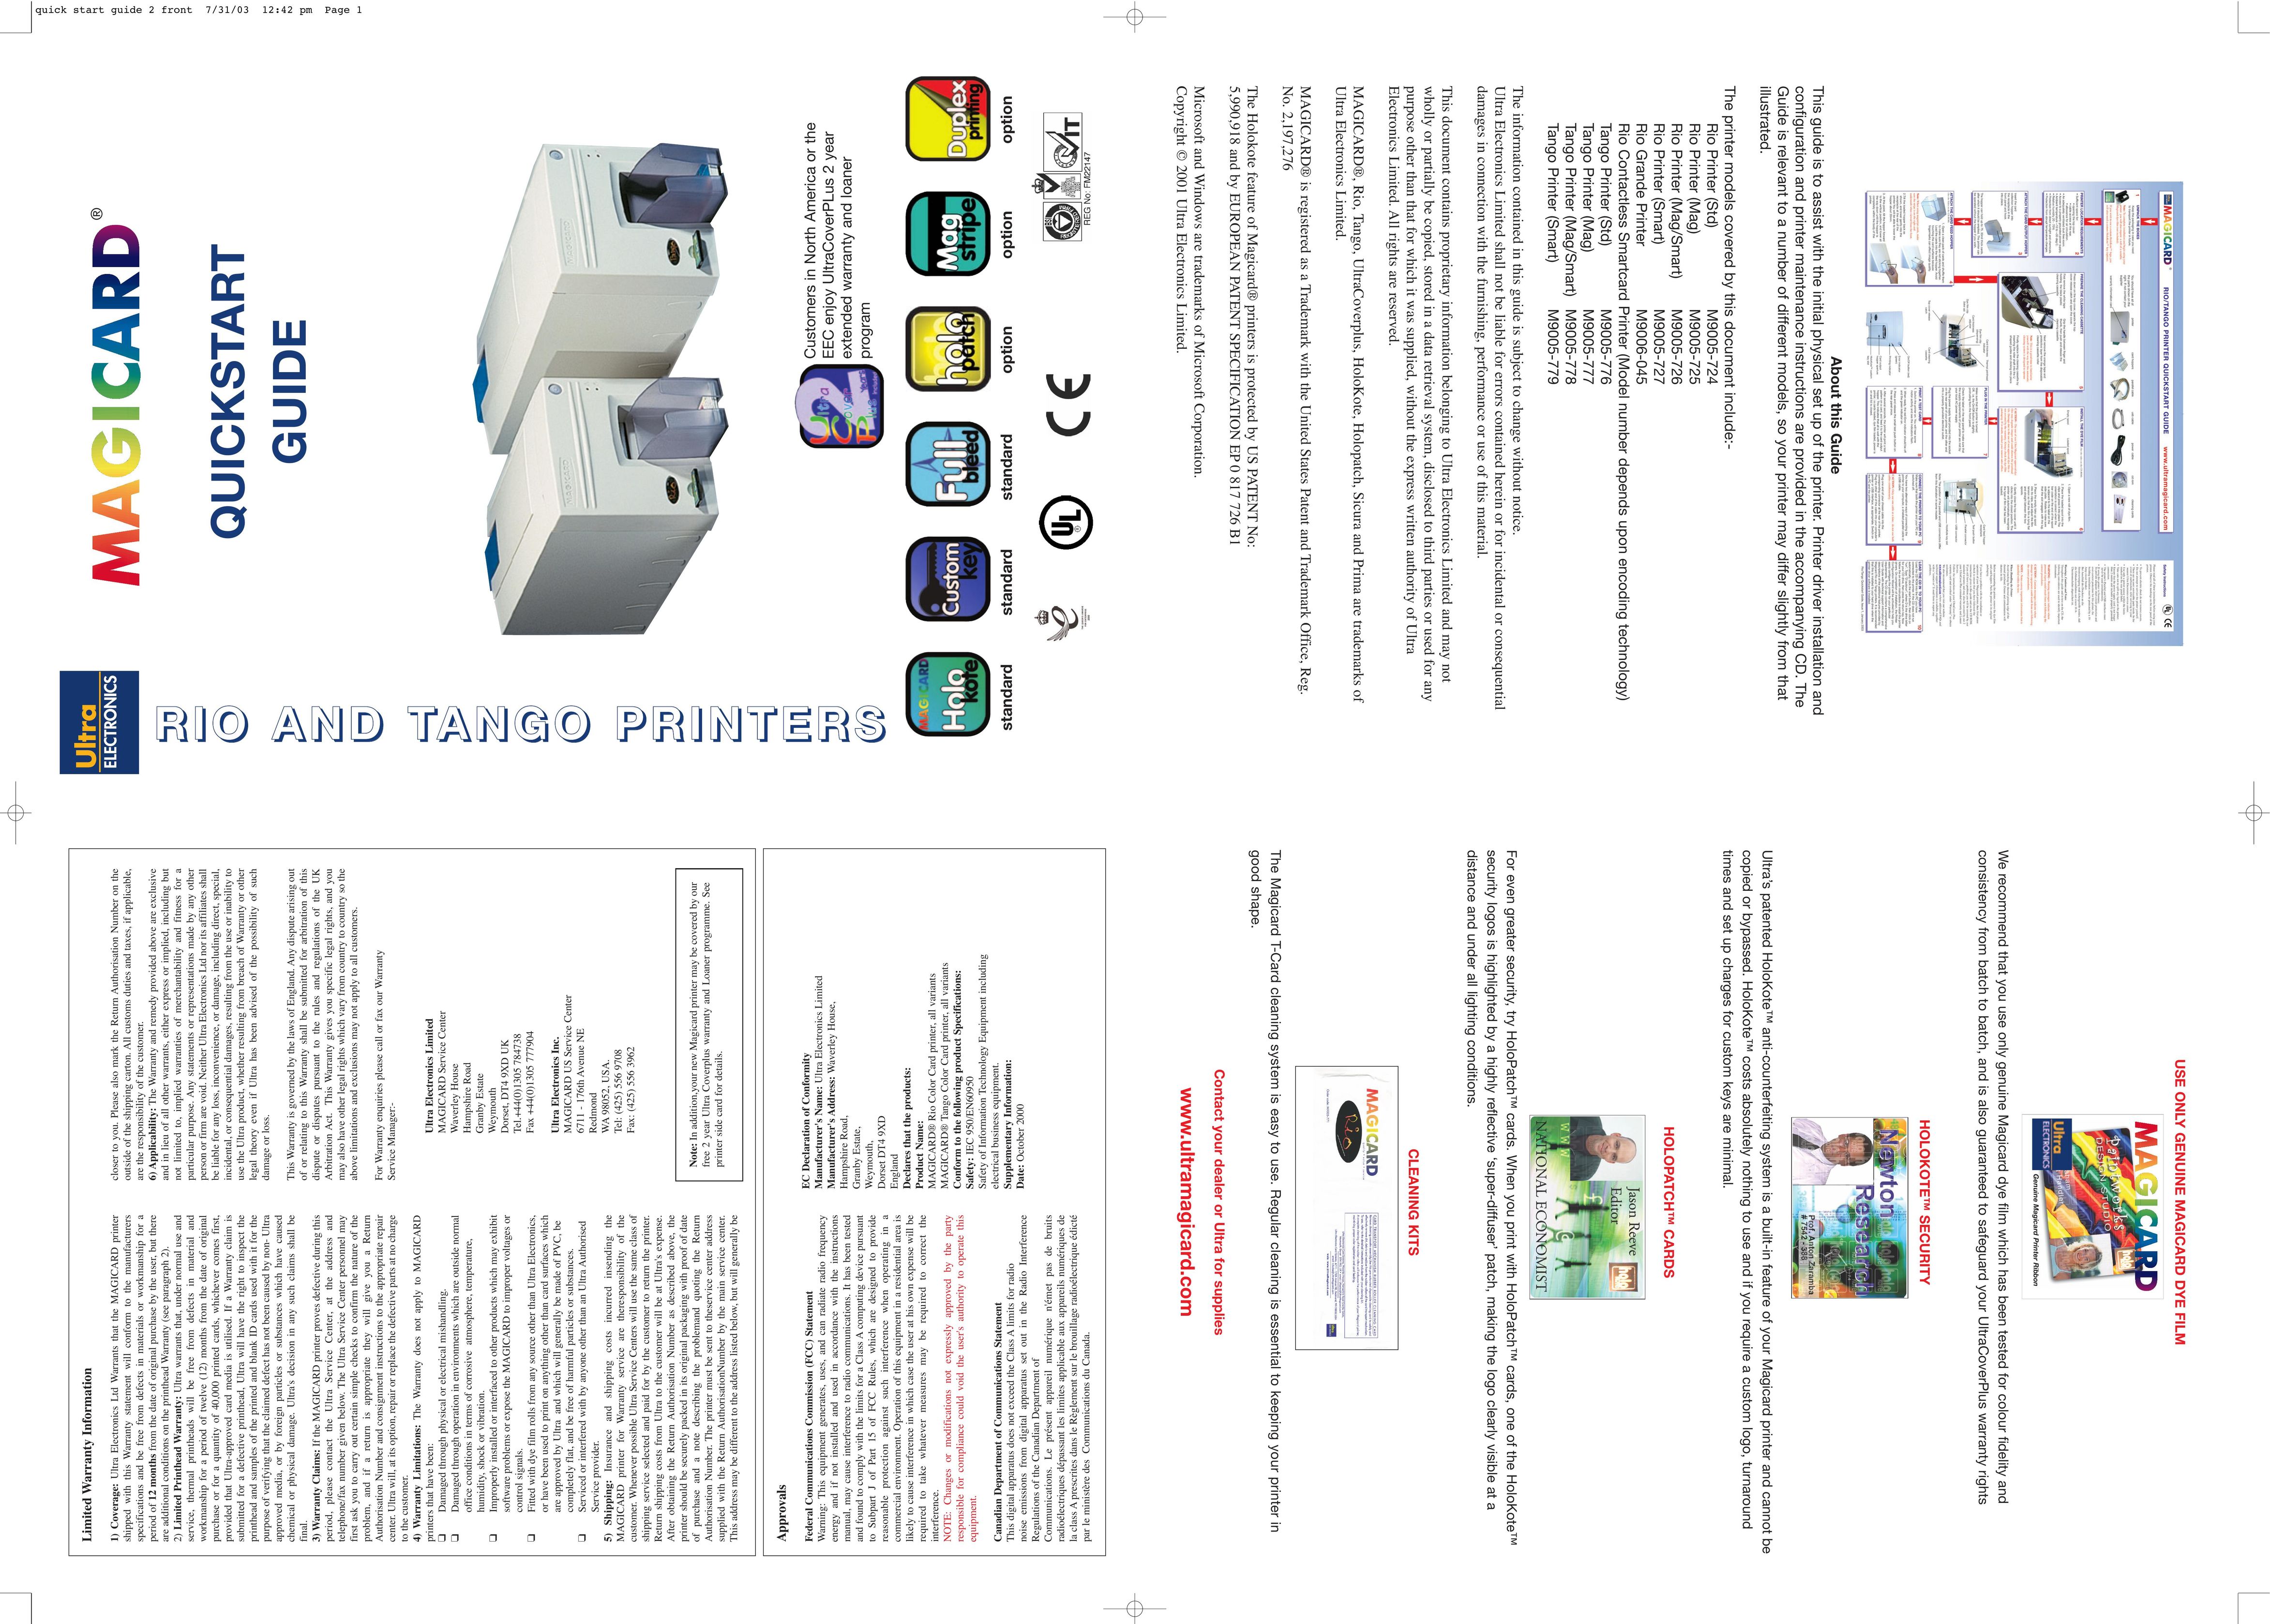 Ultra electronic M9005-779 Printer User Manual